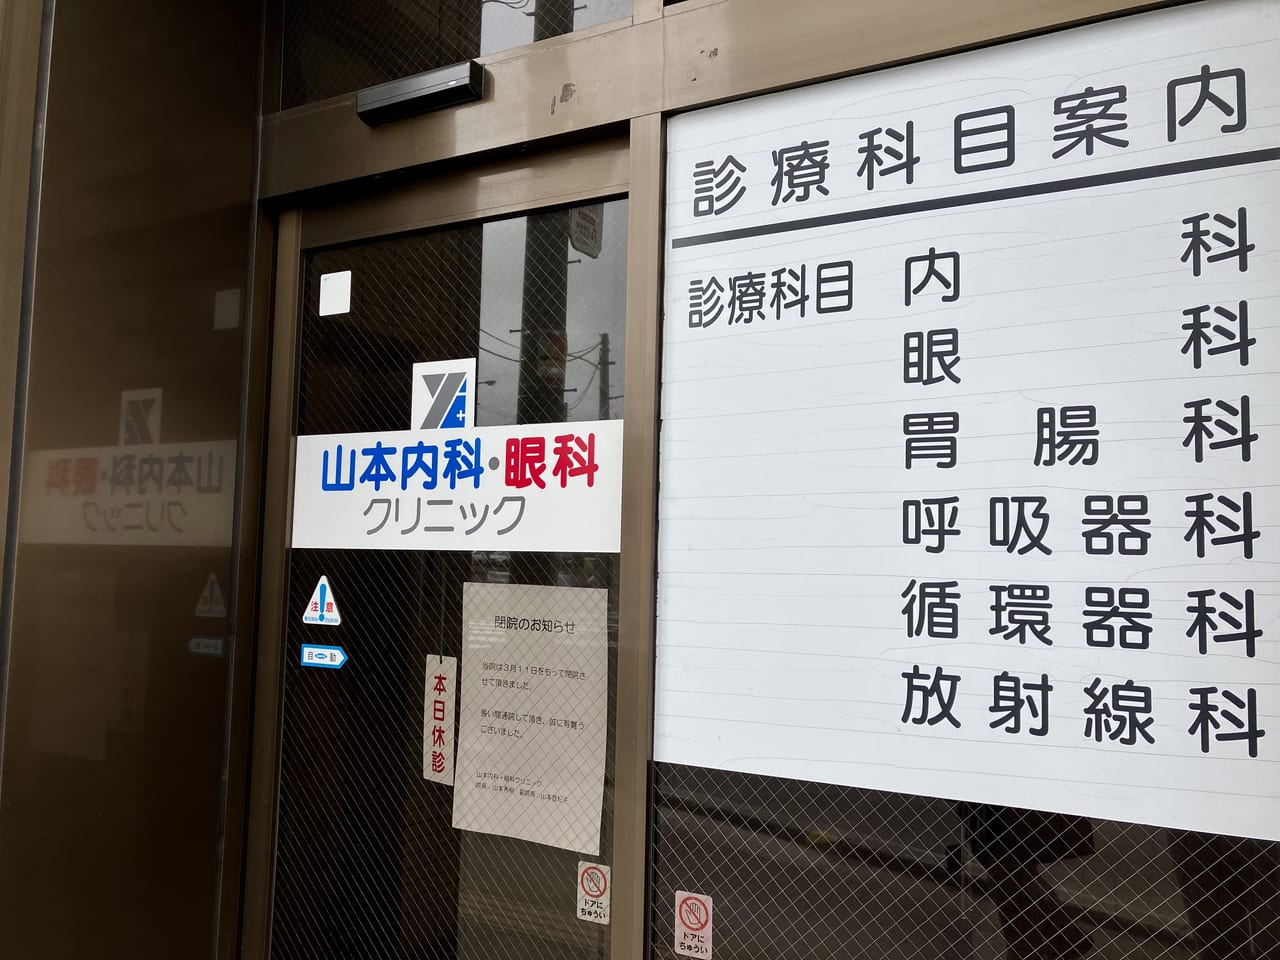 環状通東駅の「山本内科・眼科クリニック」が3月11日をもって閉院していました。